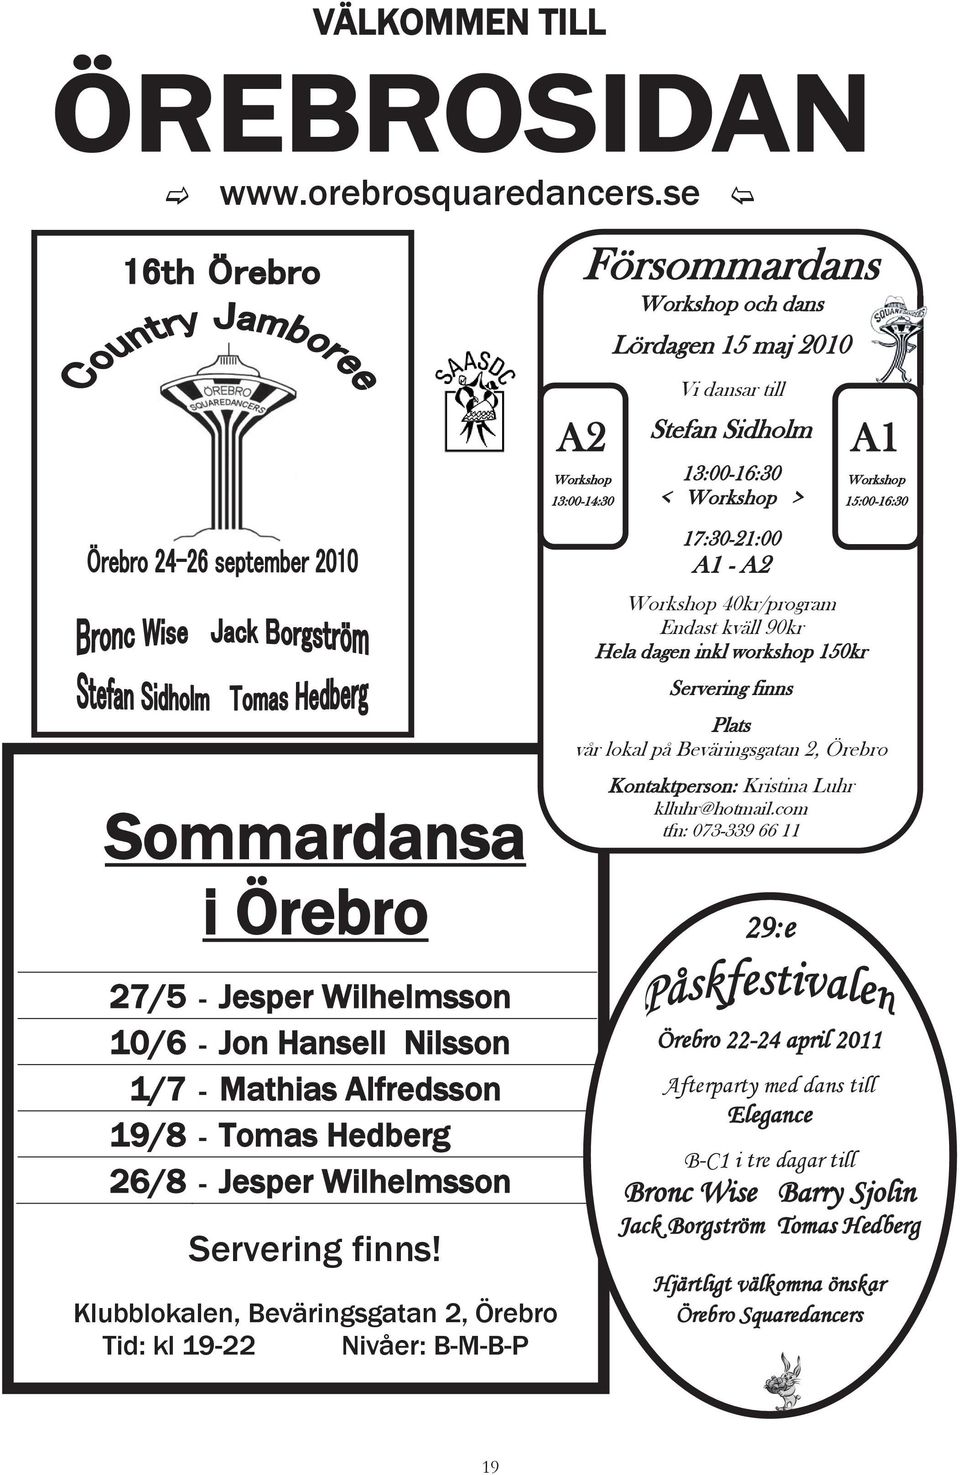 27/5 - Jesper Wilhelmsson 10/6 - Jon Hansell Nilsson 1/7 - Mathias Alfredsson 19/8 - Tomas Hedberg 26/8 - Jesper Wilhelmsson Servering finns!